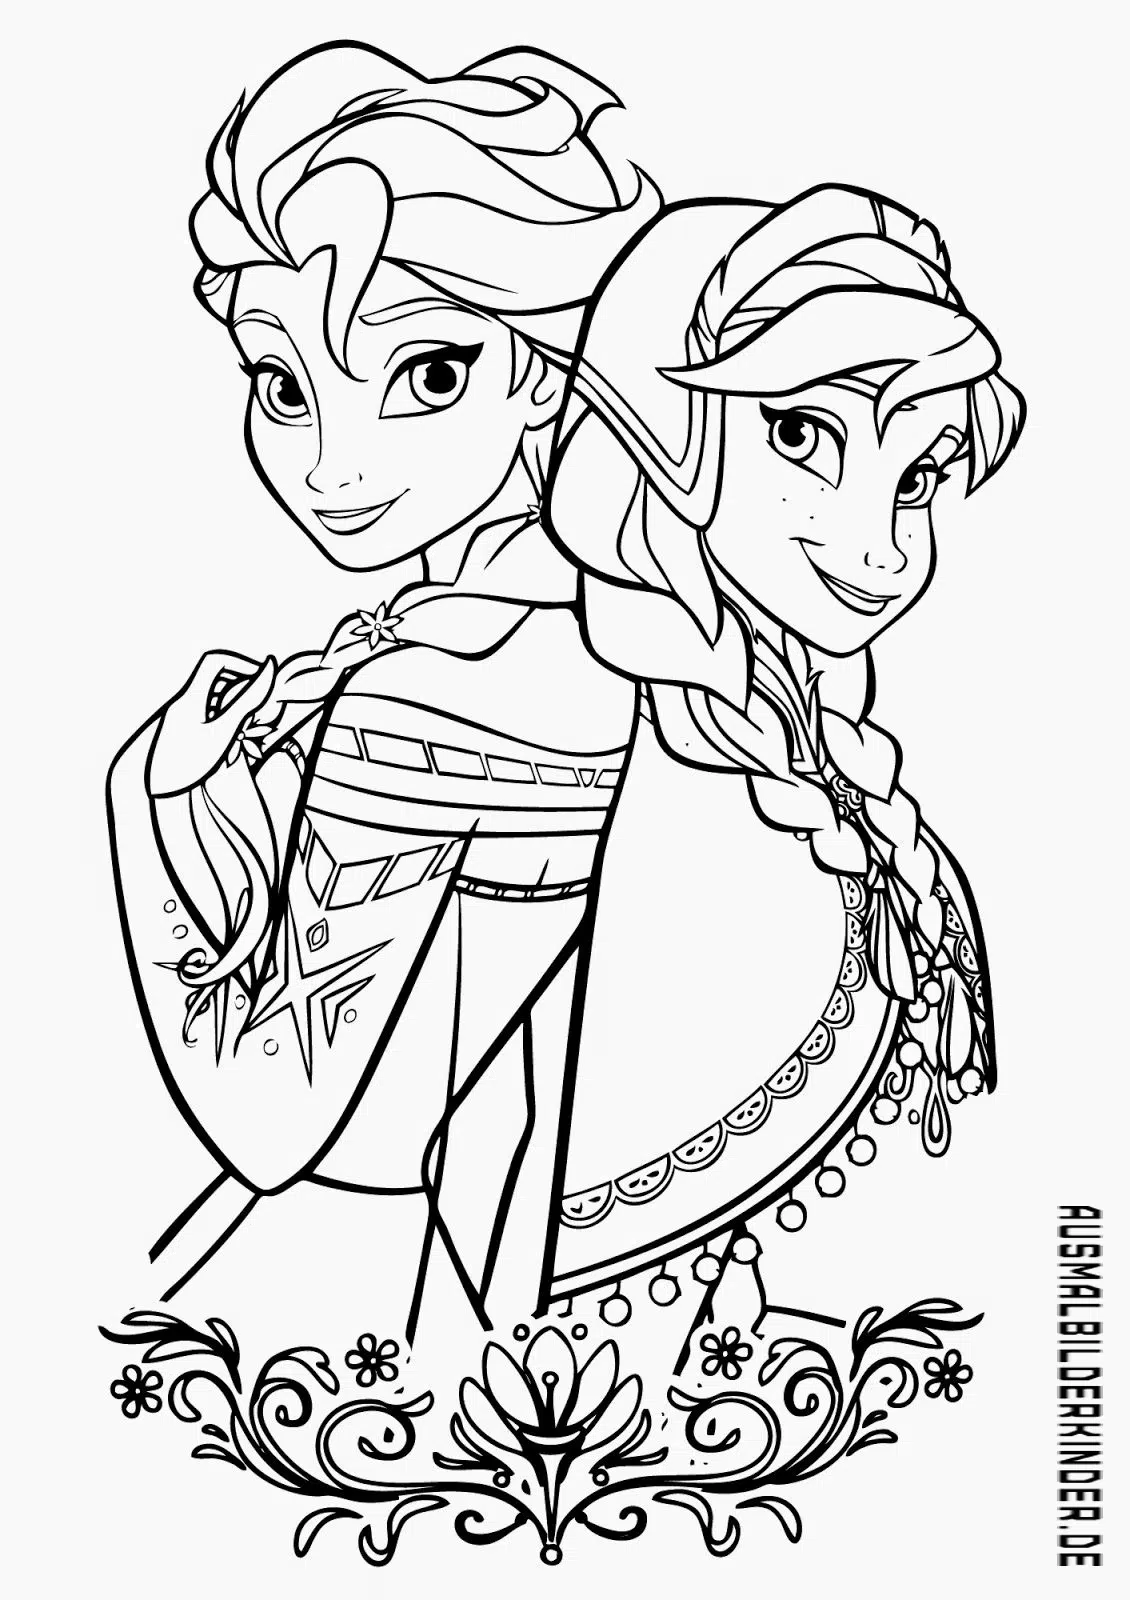 Anna und Elsa 03